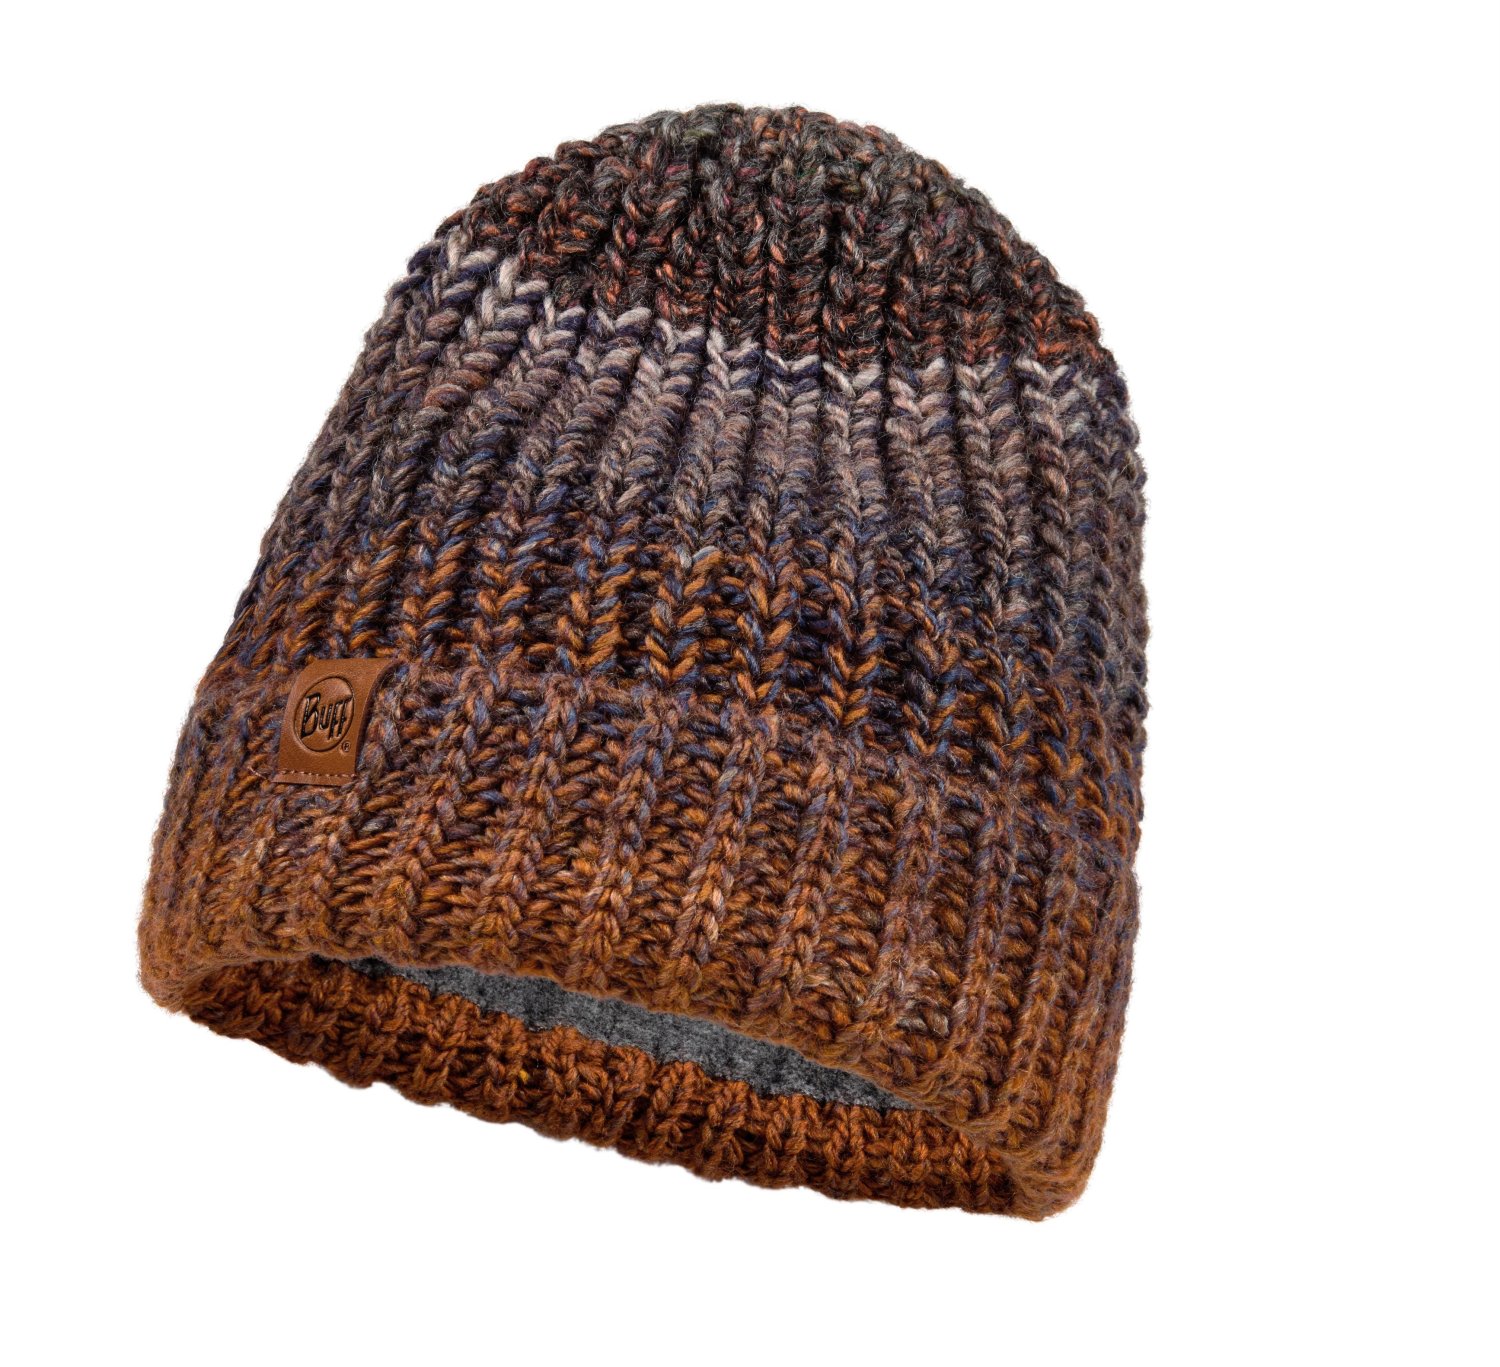 Шапка Buff Knitted & Fleece Band Hat OLYA Pewter US:one size, 120844.906.10.00 шапка buff knitted hat nilah nilah ice us one size 132322 798 10 00